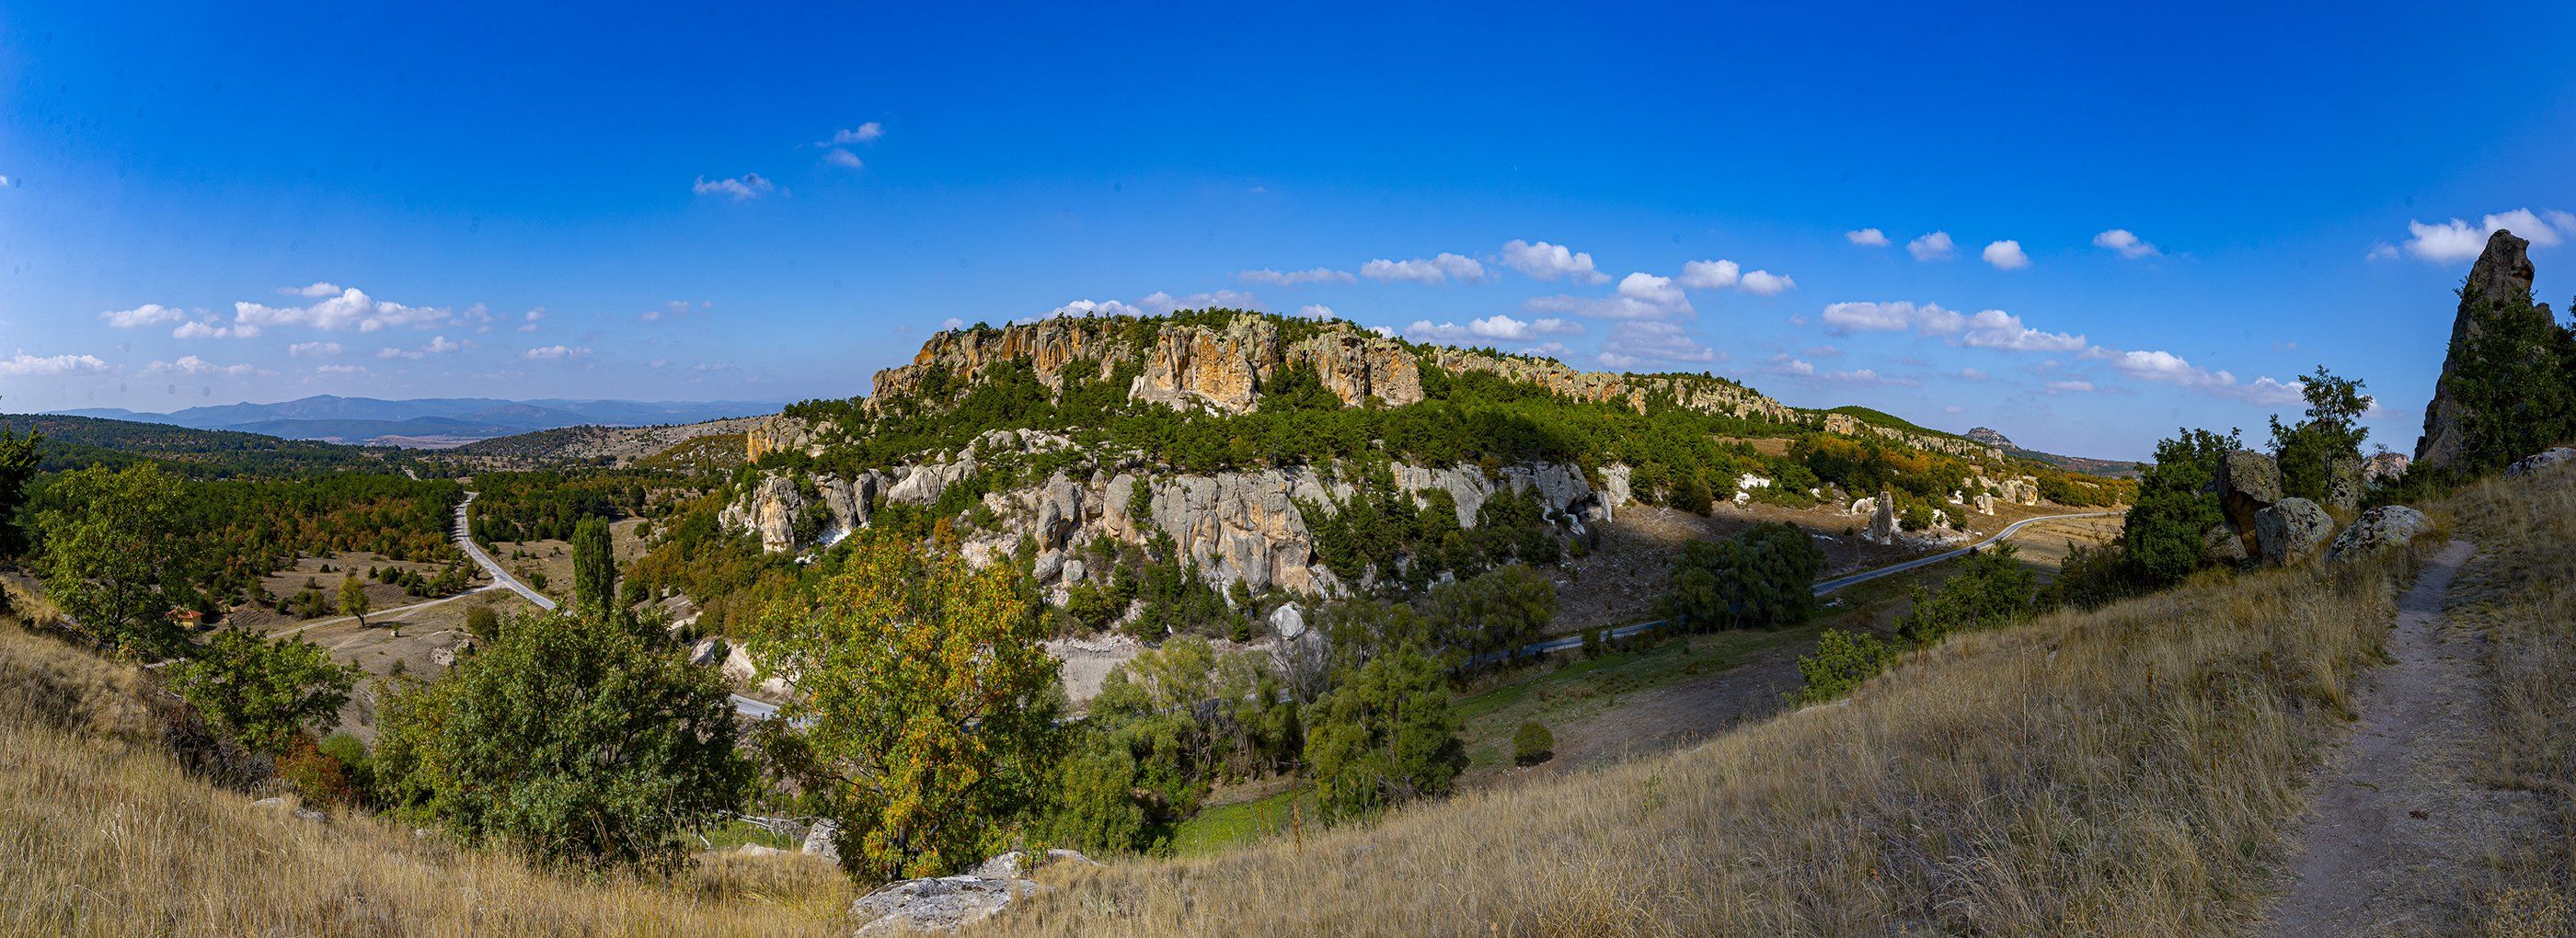 phrygian valley,anatolia,phrygians,valley,frig vadisi,eskişehir,rocks,historycal,, mehmet enver karanfil